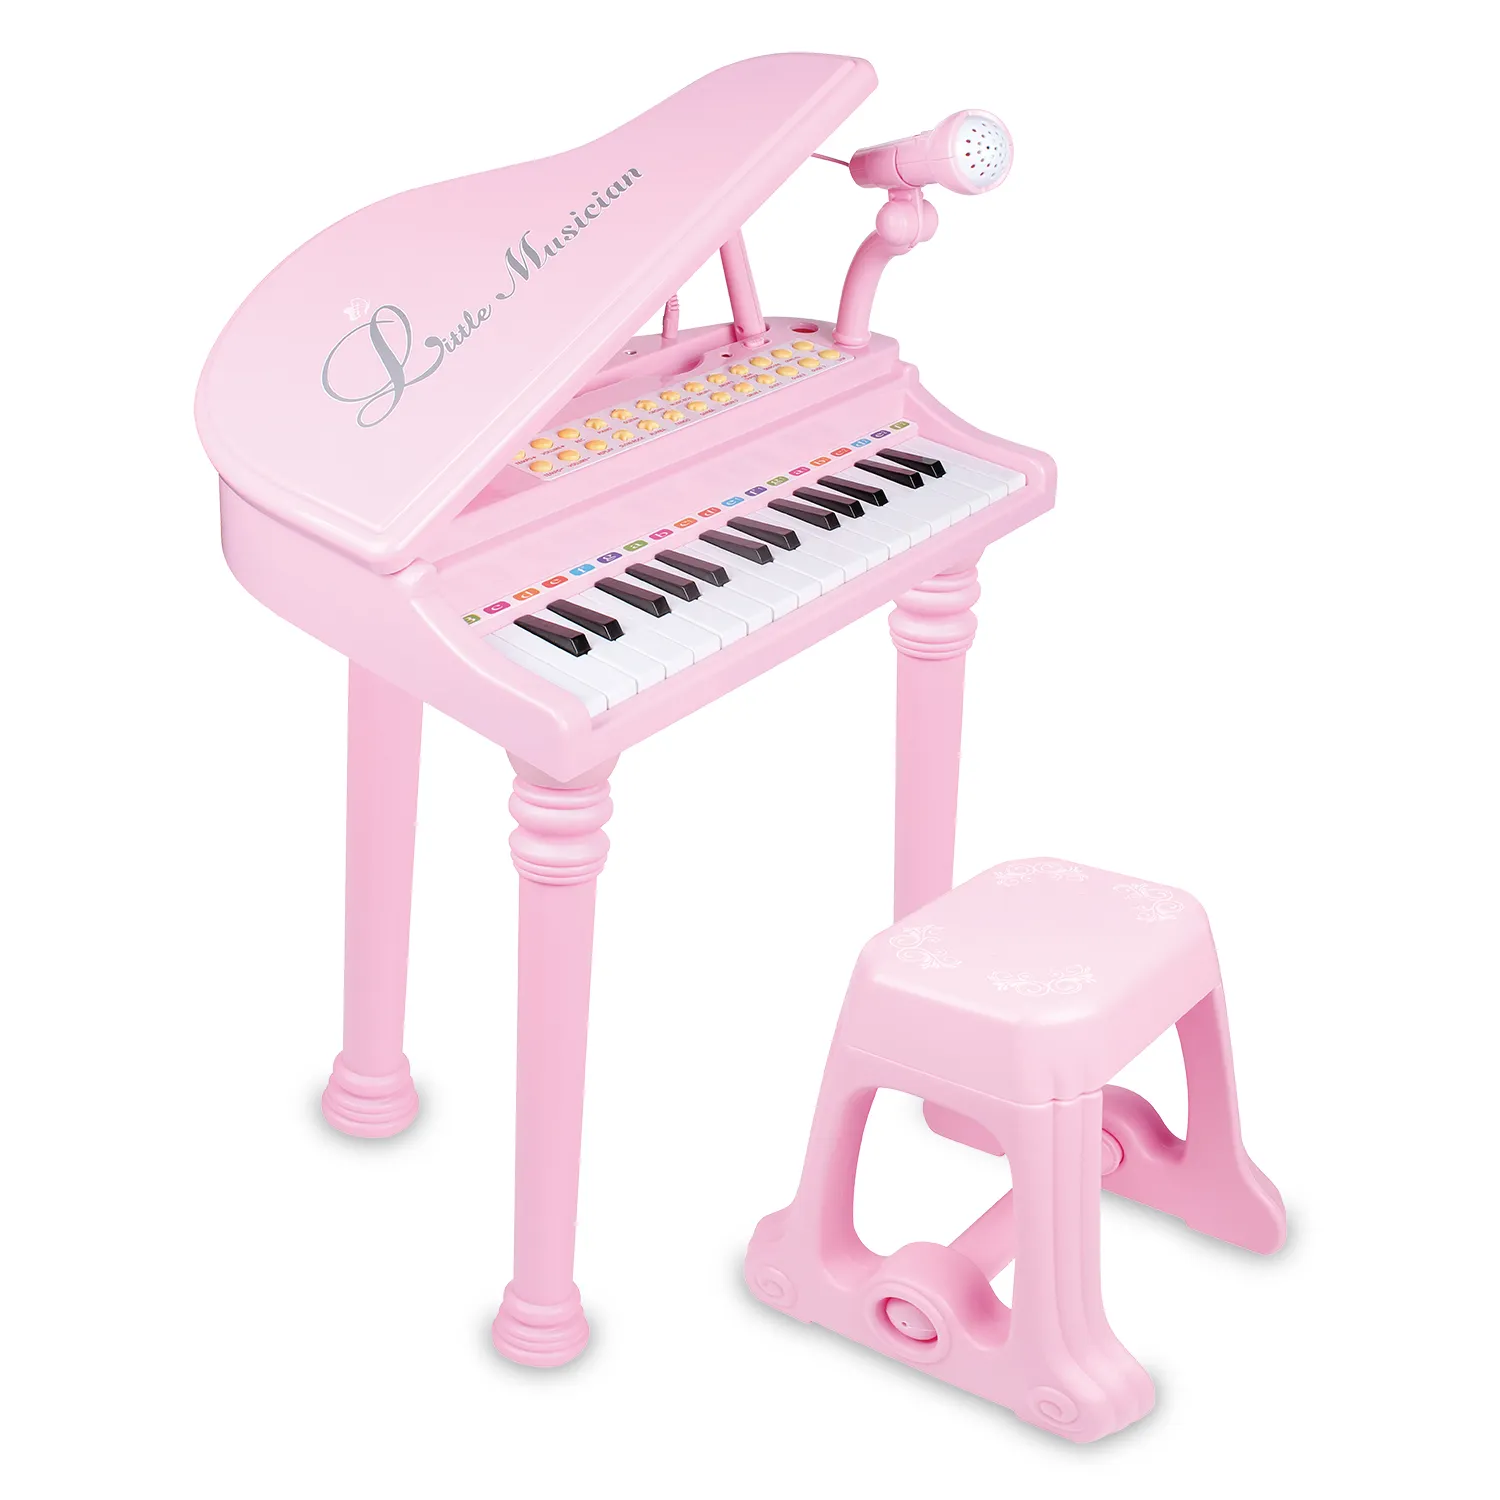 Diskon besar-besaran pabrik dengan mikrofon dan bangku dapat dihubungkan ke peralatan audio ABS mainan anak-anak keyboard piano digital